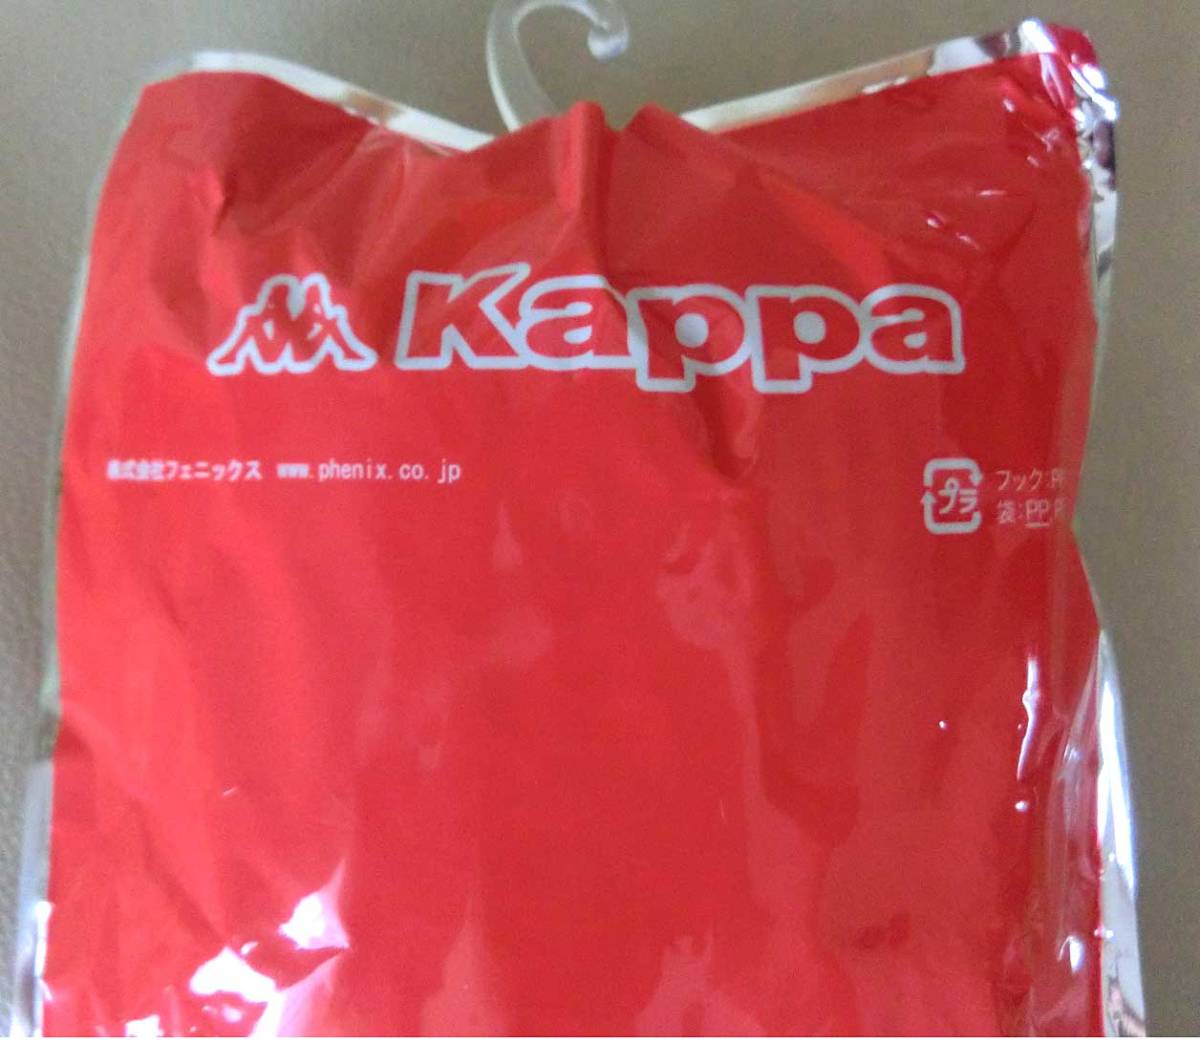 新品 ★ Kappa イタリアンブルー O 27㎝～29㎝ カッパ サッカー ストッキング ソックス KFEA7123 日本製 フットサル メンズ 大人_画像4